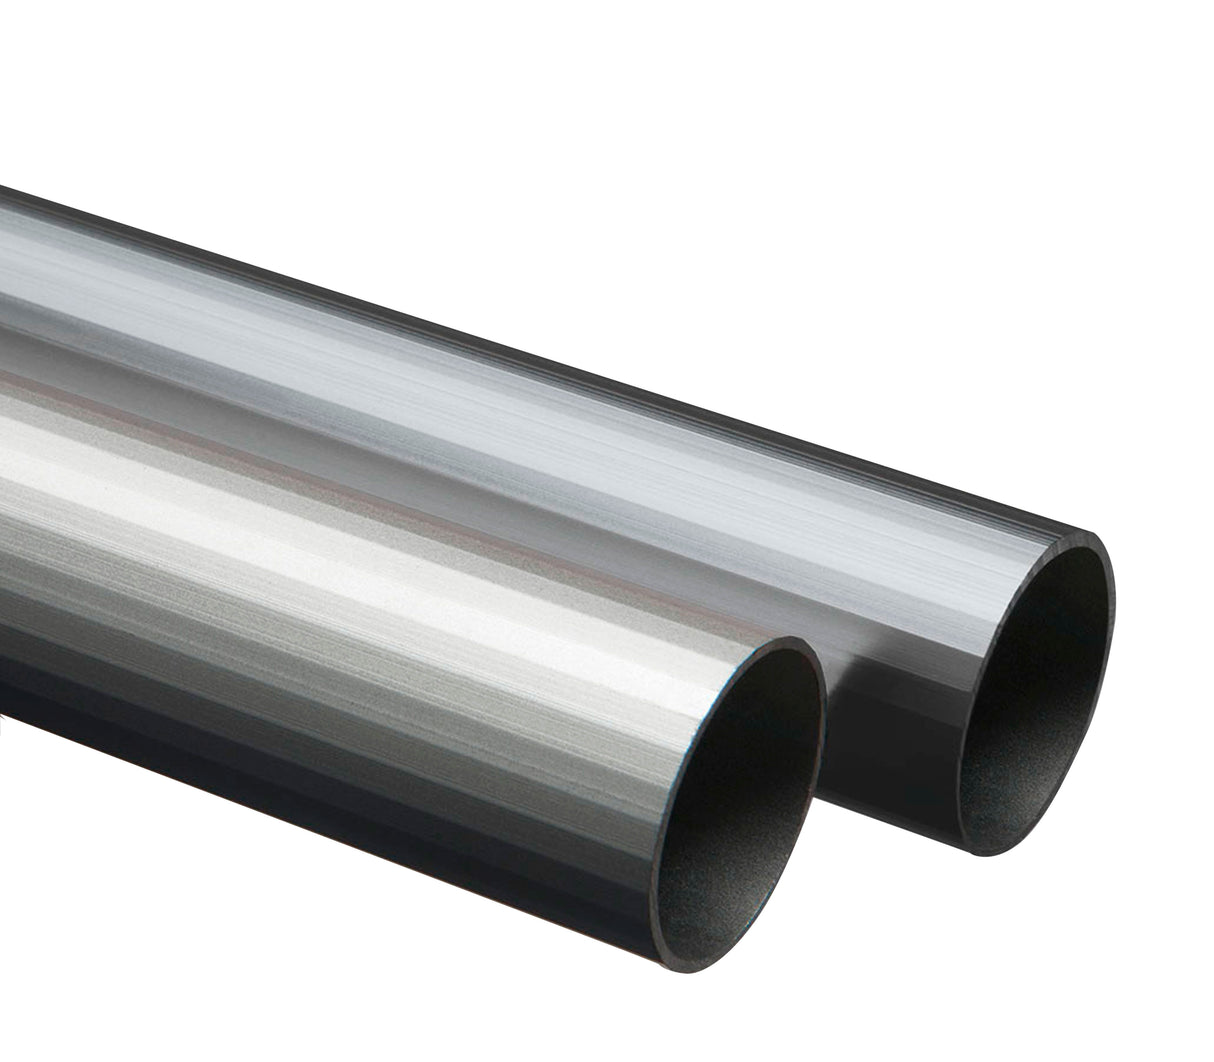 Tubo redondo de aluminio 25mm x 2m Tauro